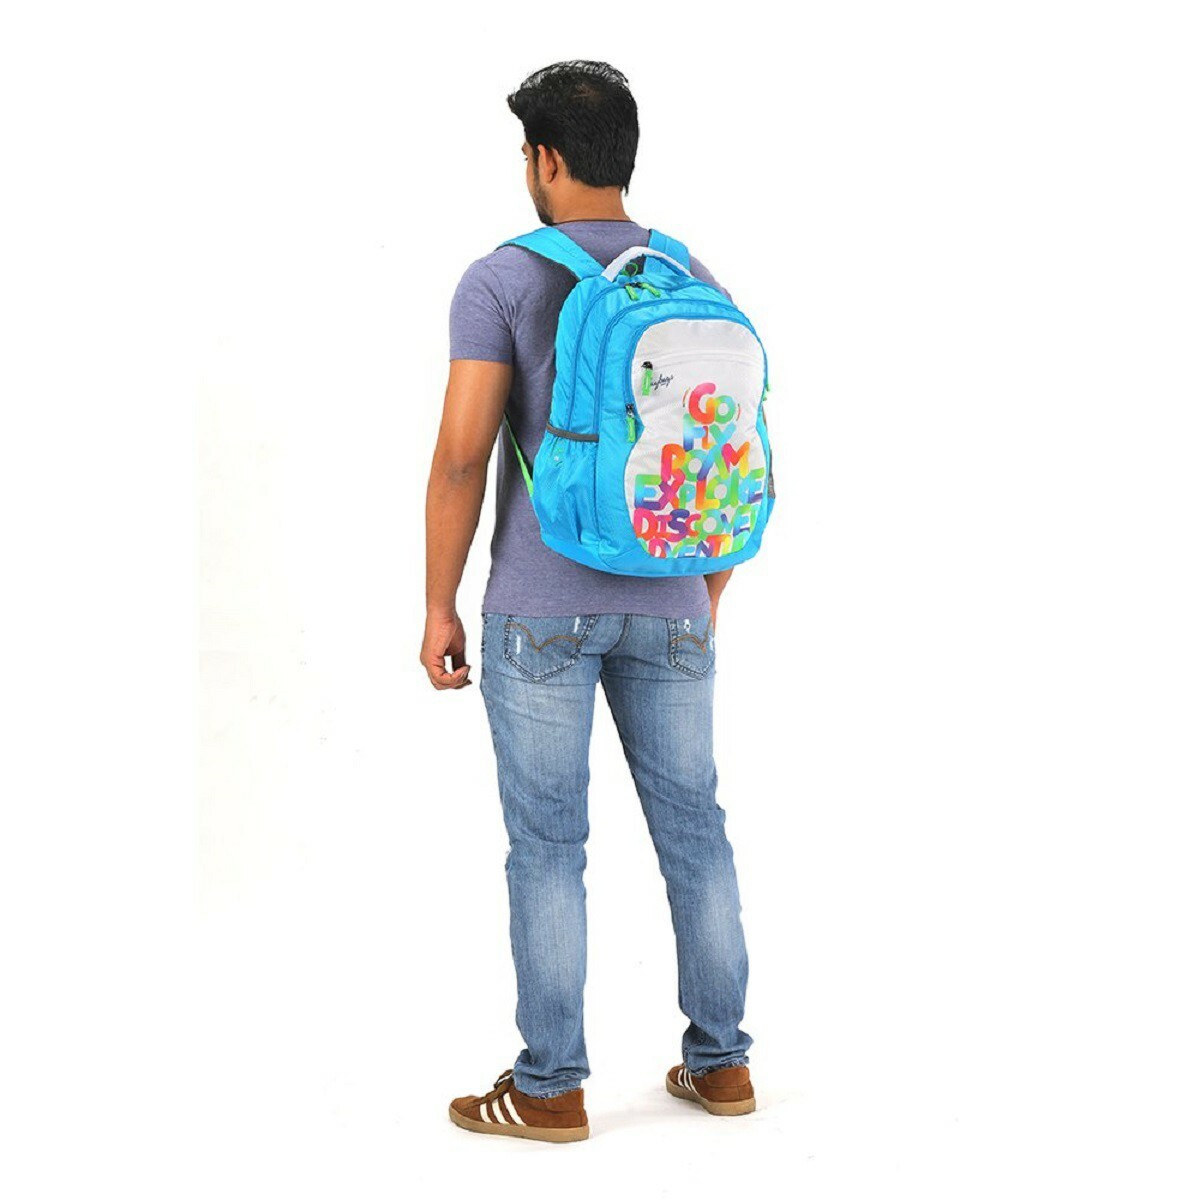 Skybags Backpack Bingo Plus 05 Blue